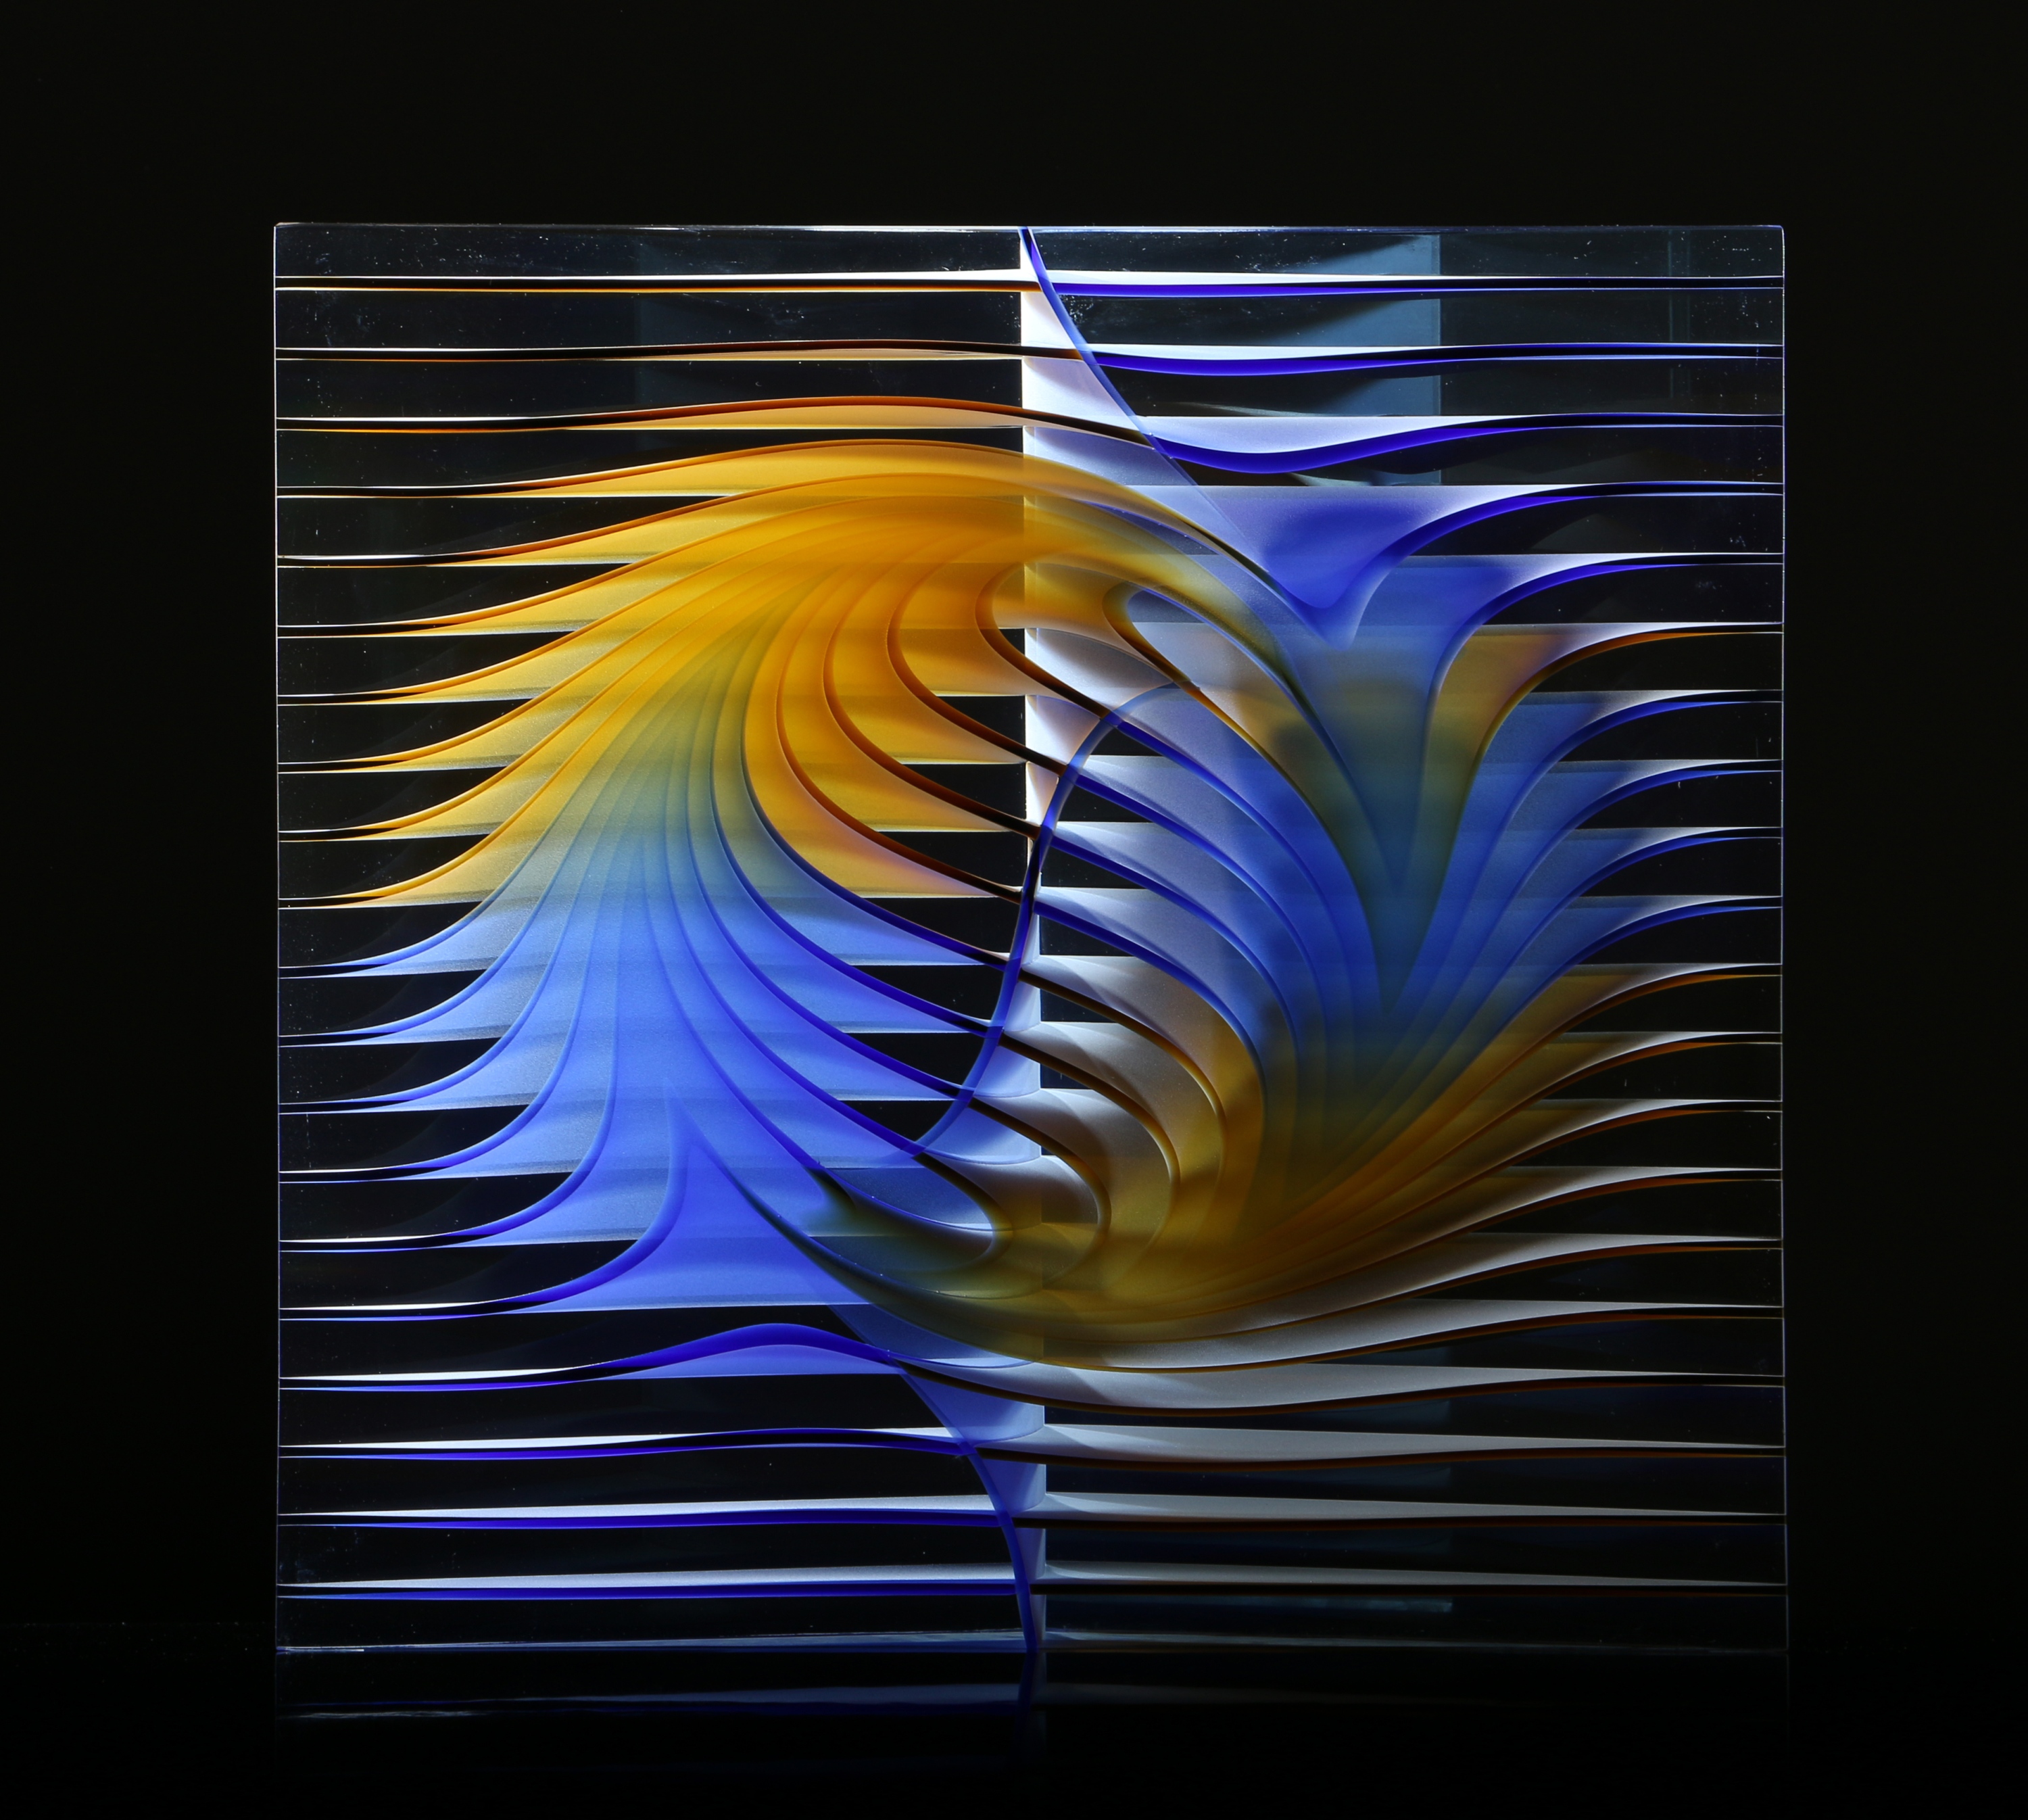 Borkovics Péter, Genezis I., 2019, Összeolvasztott színesüveg elemek, magas hőfokon formázva, csiszolva és polírozva, 40 x 40 x 8 cm